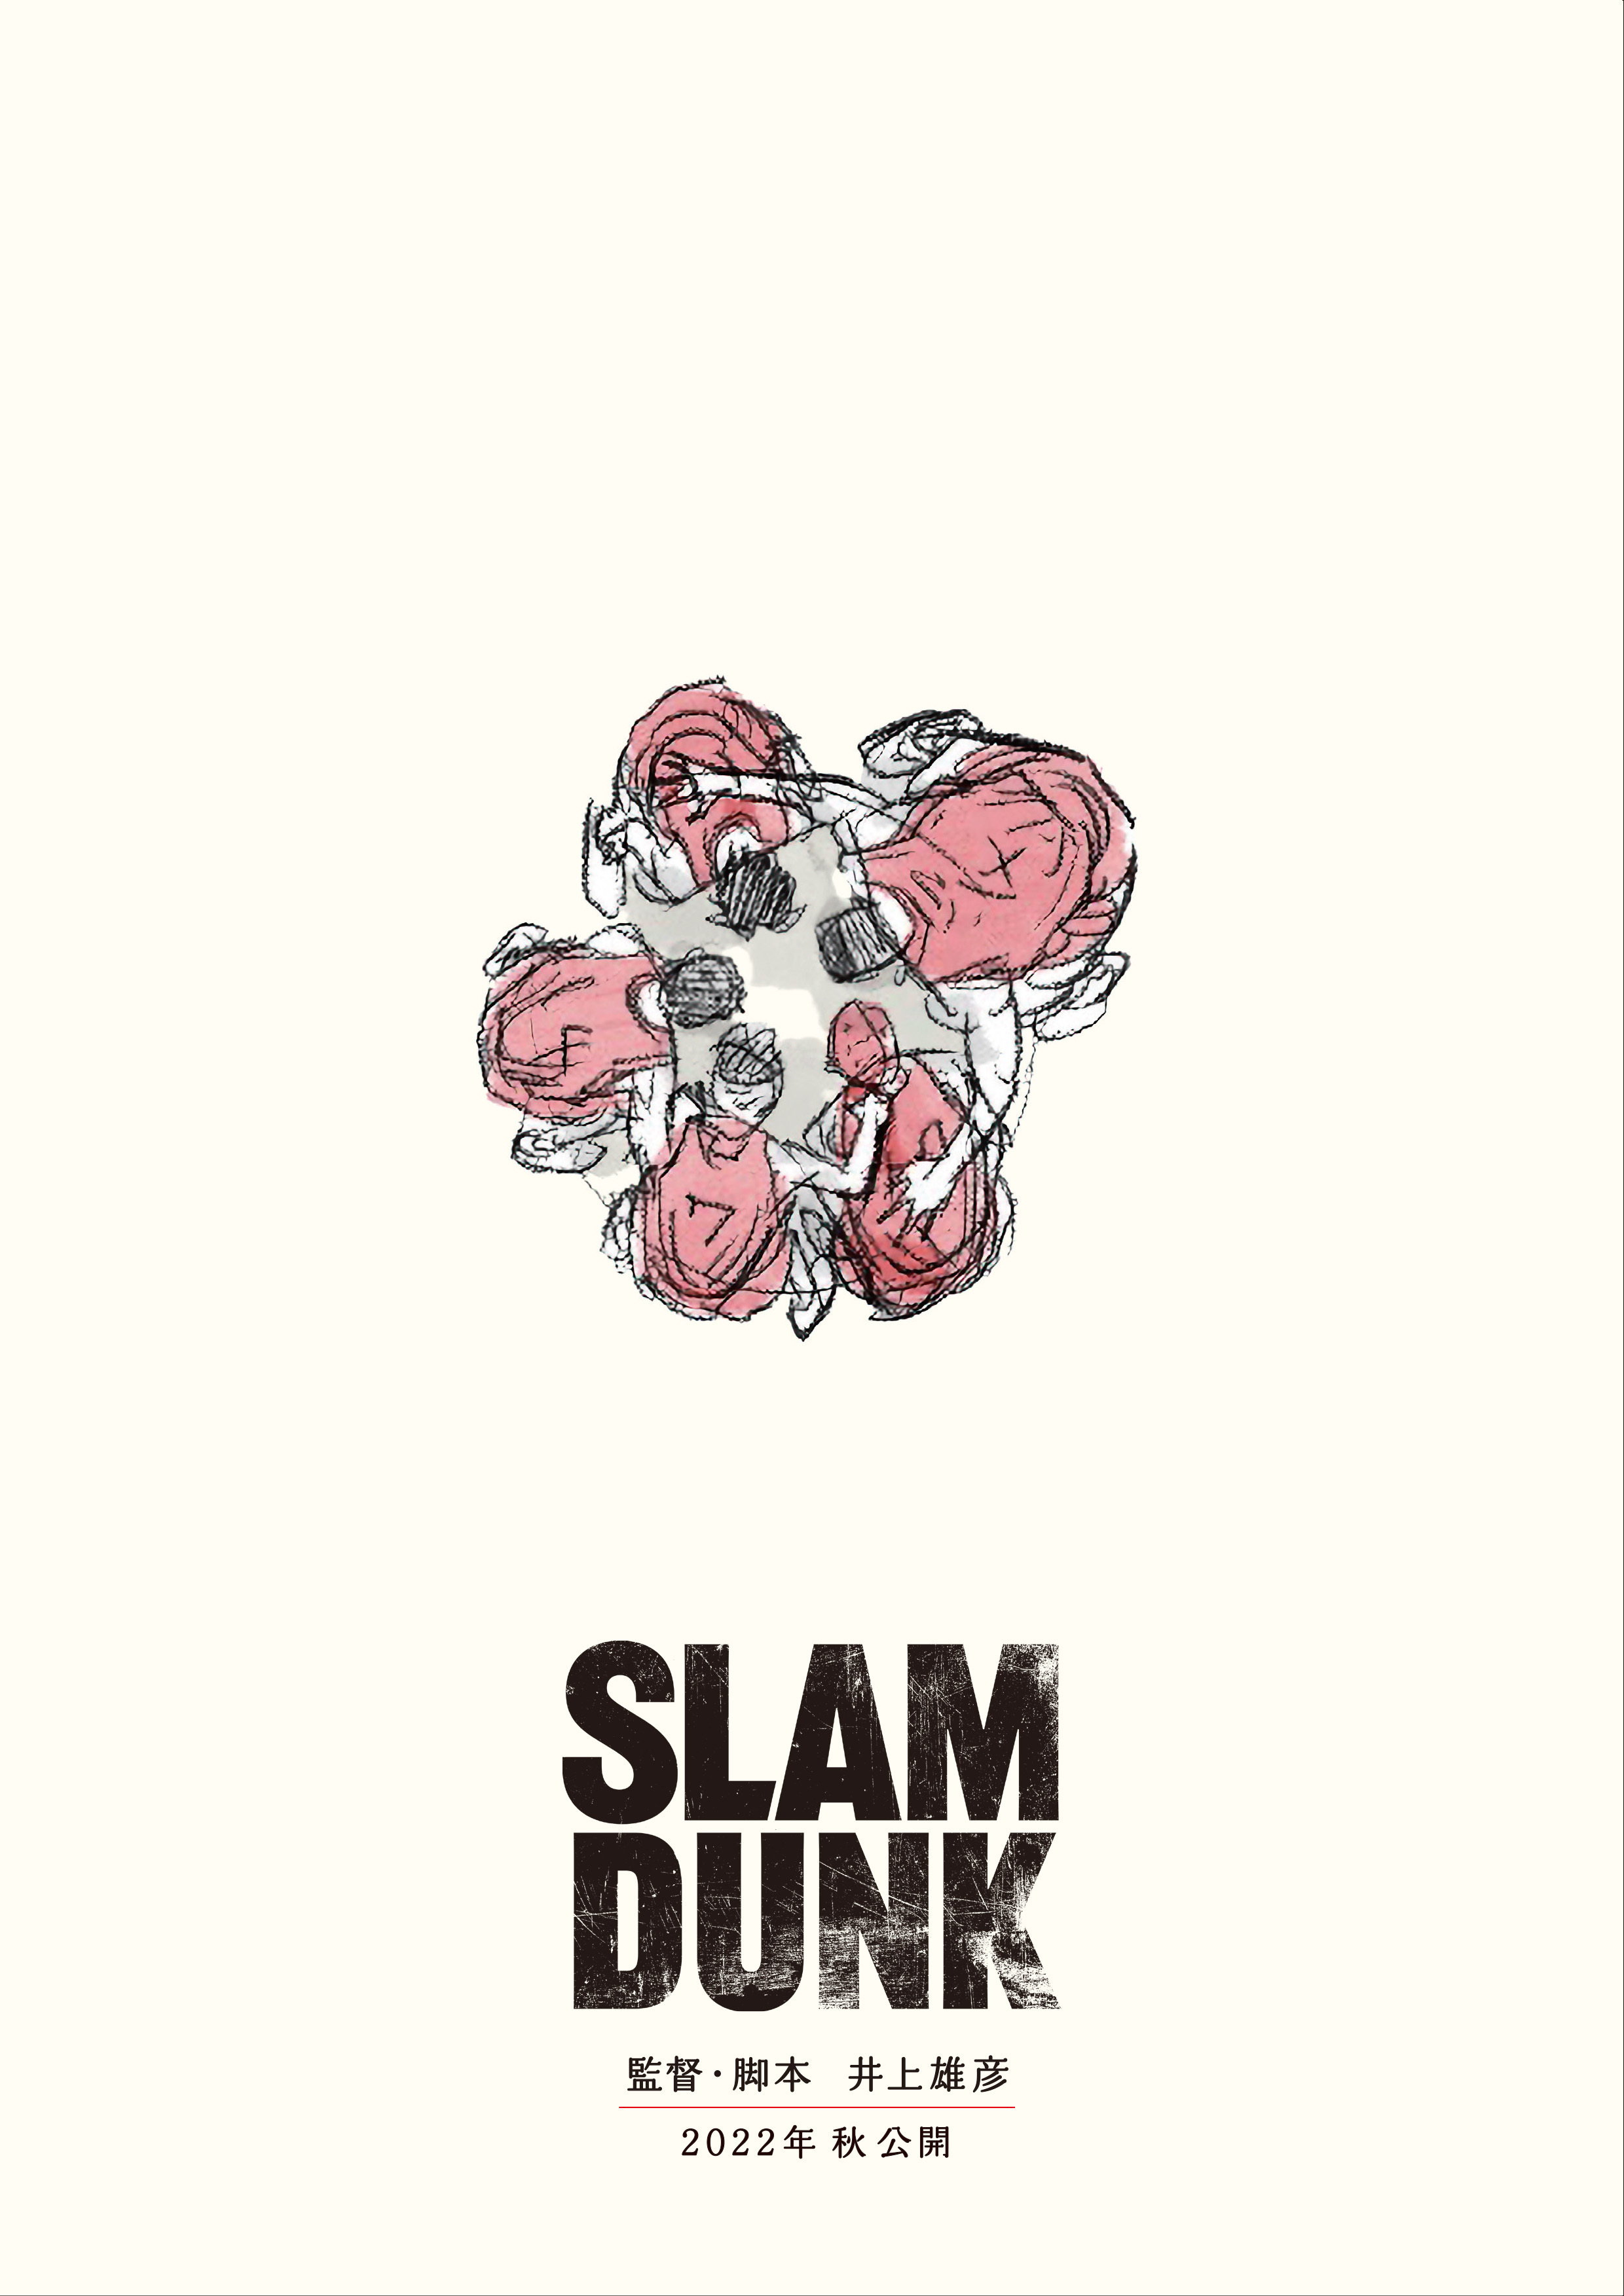 SLAM DUNK」新作アニメ映画、2022年秋に公開決定！ 監督・脚本は井上